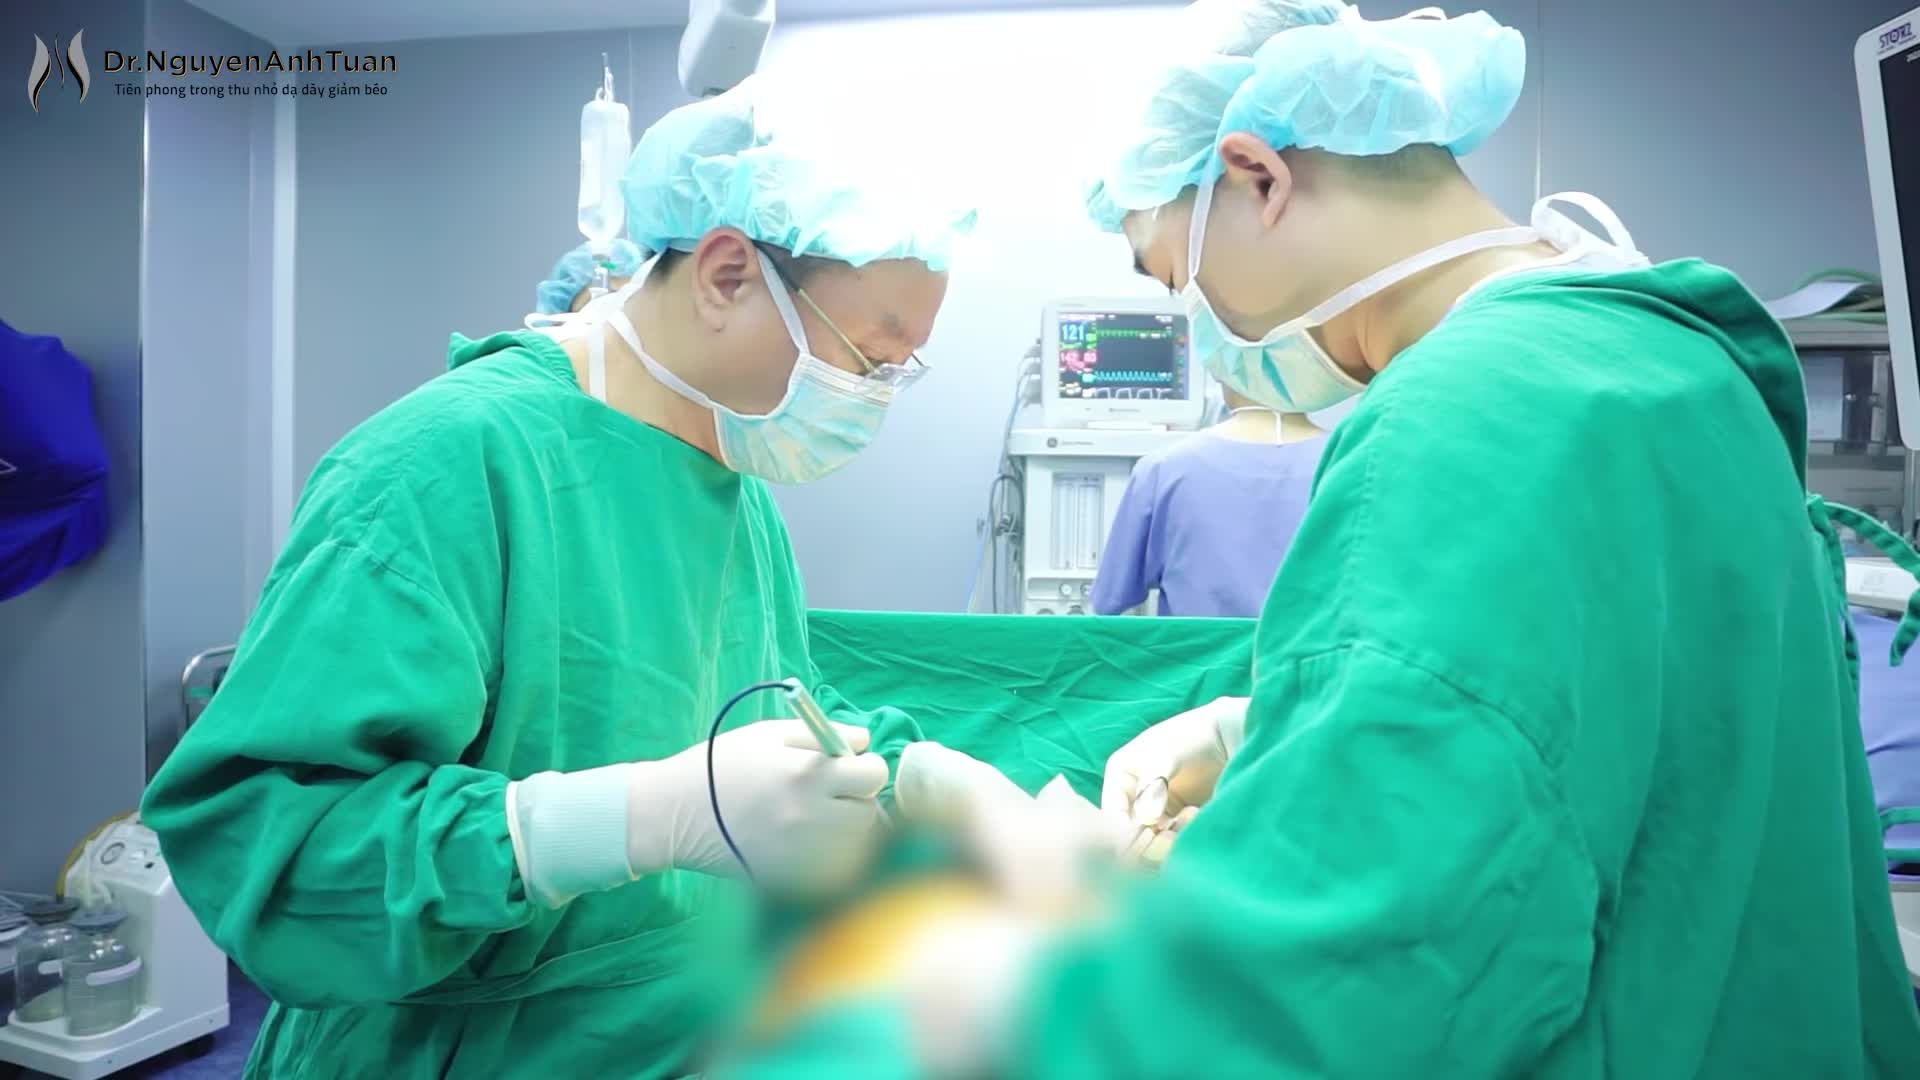 Ca phẫu thuật thu nhỏ dạ dày cho bệnh nhân đến từ Sóc Trăng nặng 117kg, chỉ số BMI=46 là mức độ béo phì trầm trọng đối với người Việt Nam.